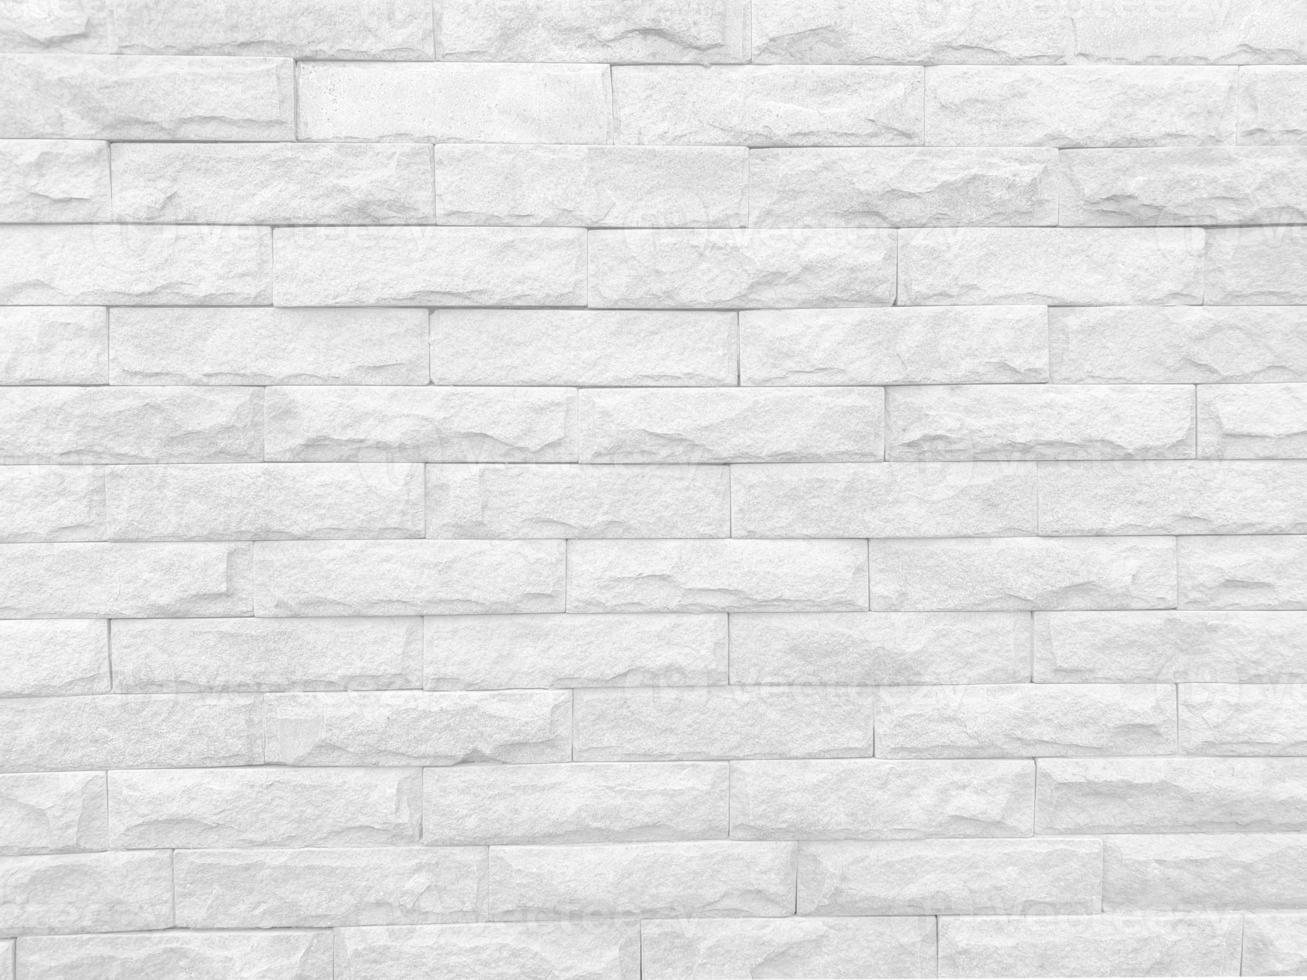 struttura senza cuciture del muro di pietra bianca una superficie ruvida, con spazio per testo, per uno sfondo. foto